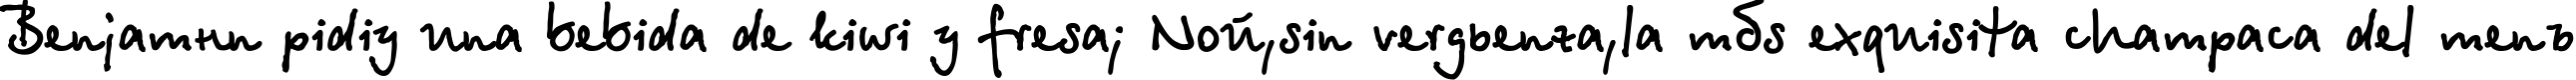 Пример написания шрифтом БетинаСкрипт-П/Ж текста на испанском